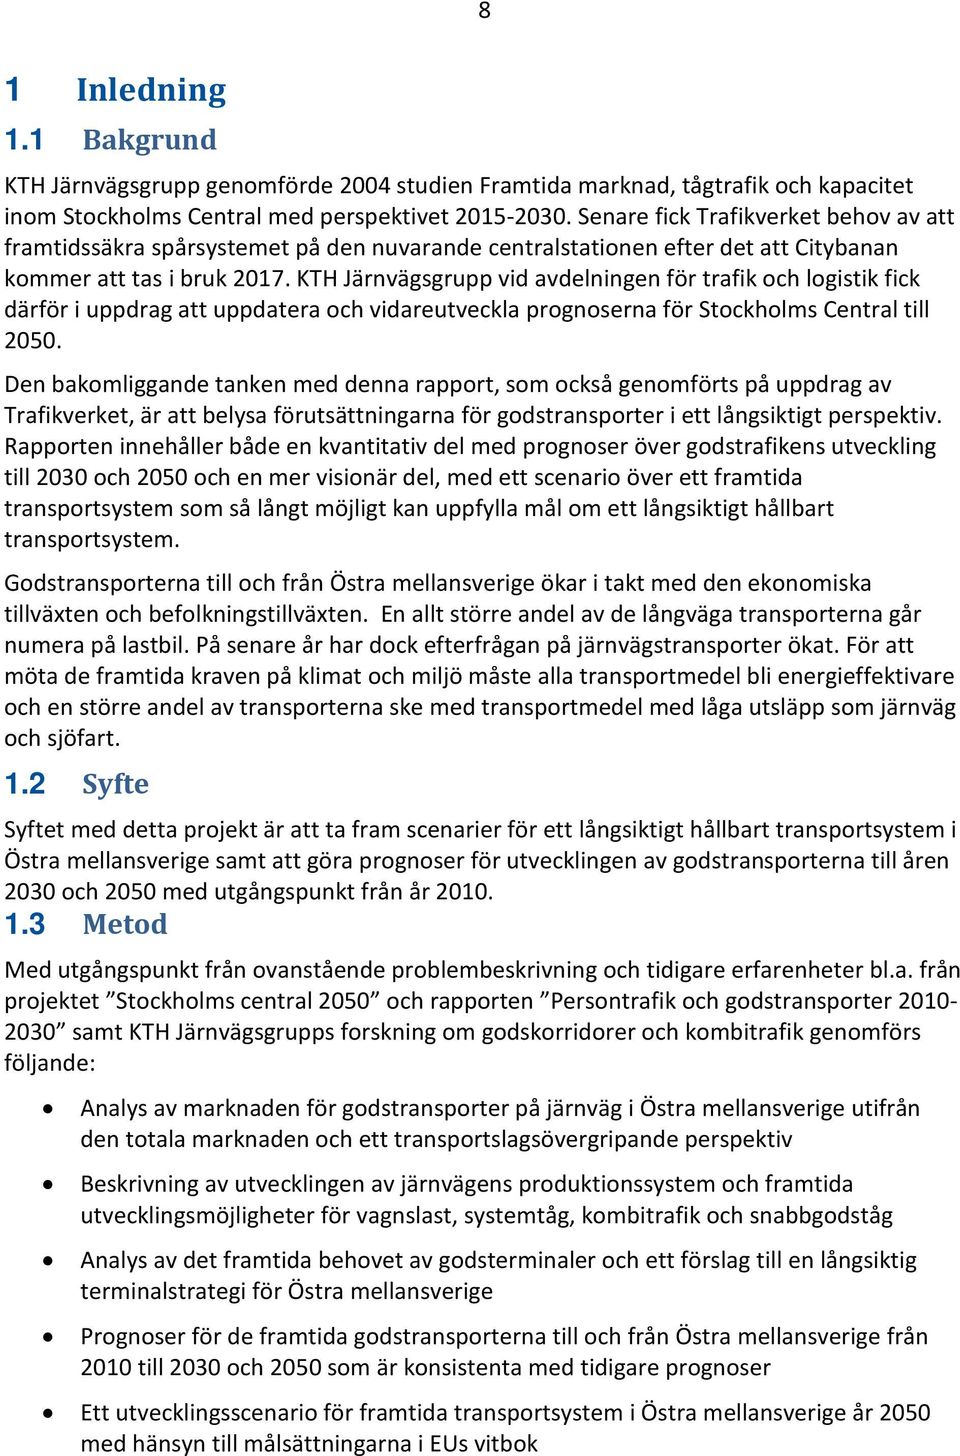 KTH Järnvägsgrupp vid avdelningen för trafik och logistik fick därför i uppdrag att uppdatera och vidareutveckla prognoserna för Stockholms Central till 2050.